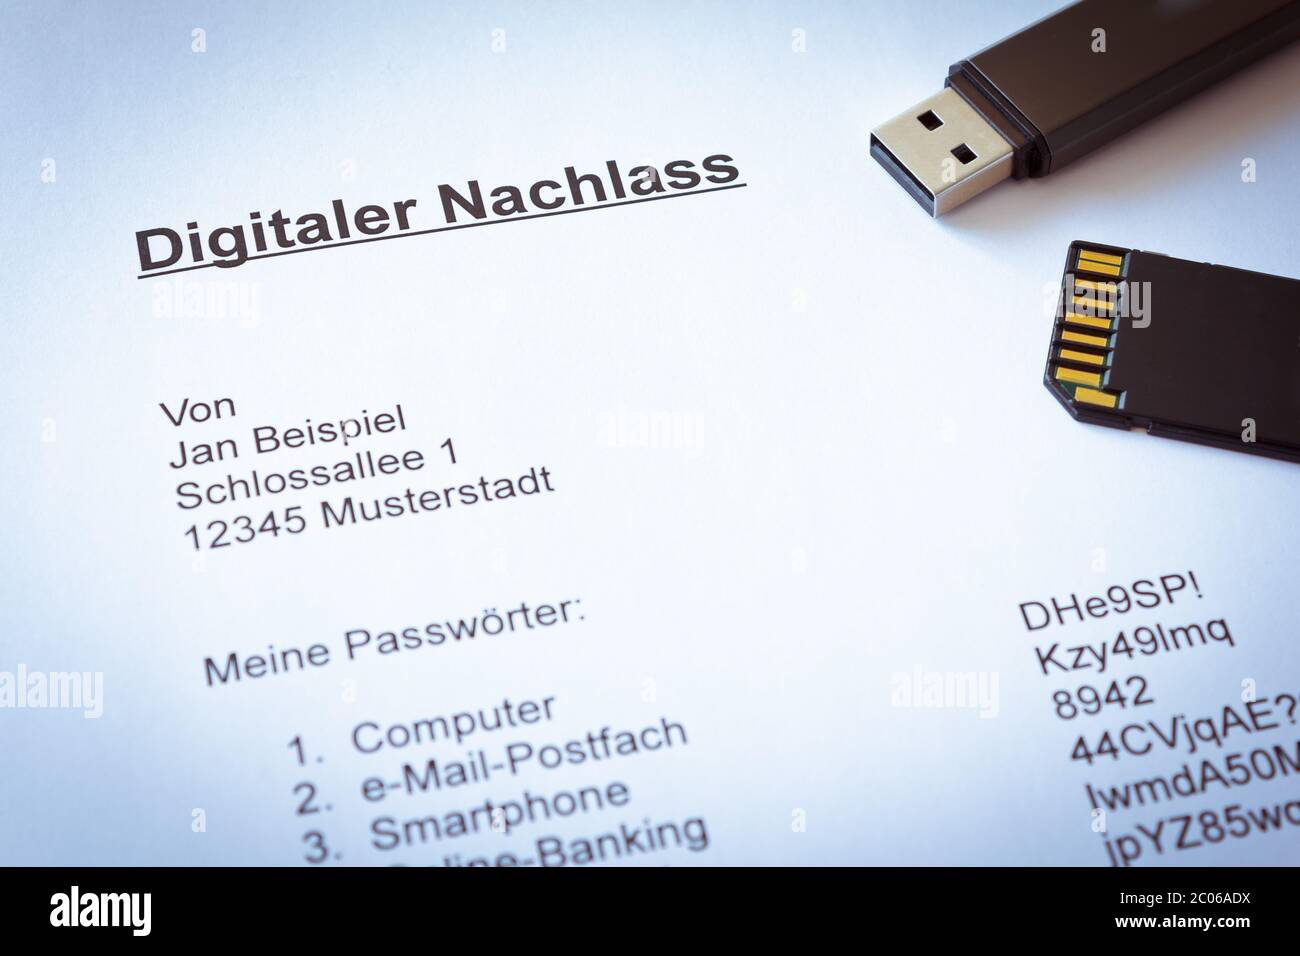 Le numérique allemand reste document avec la clé et la carte mémoire: Digitaler nachlass. Banque D'Images